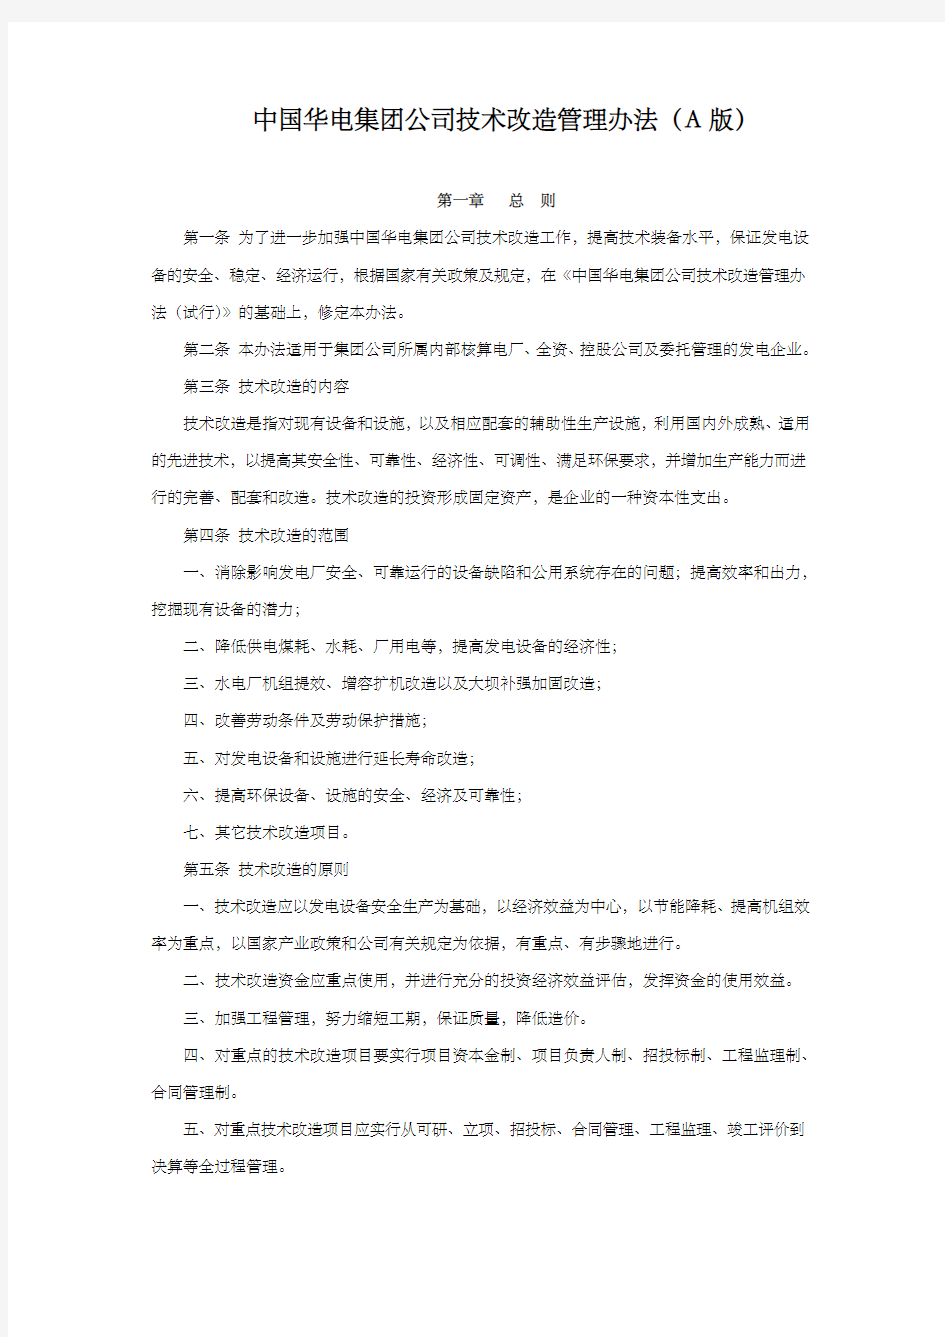 中国华电集团公司技术改造管理办法A版